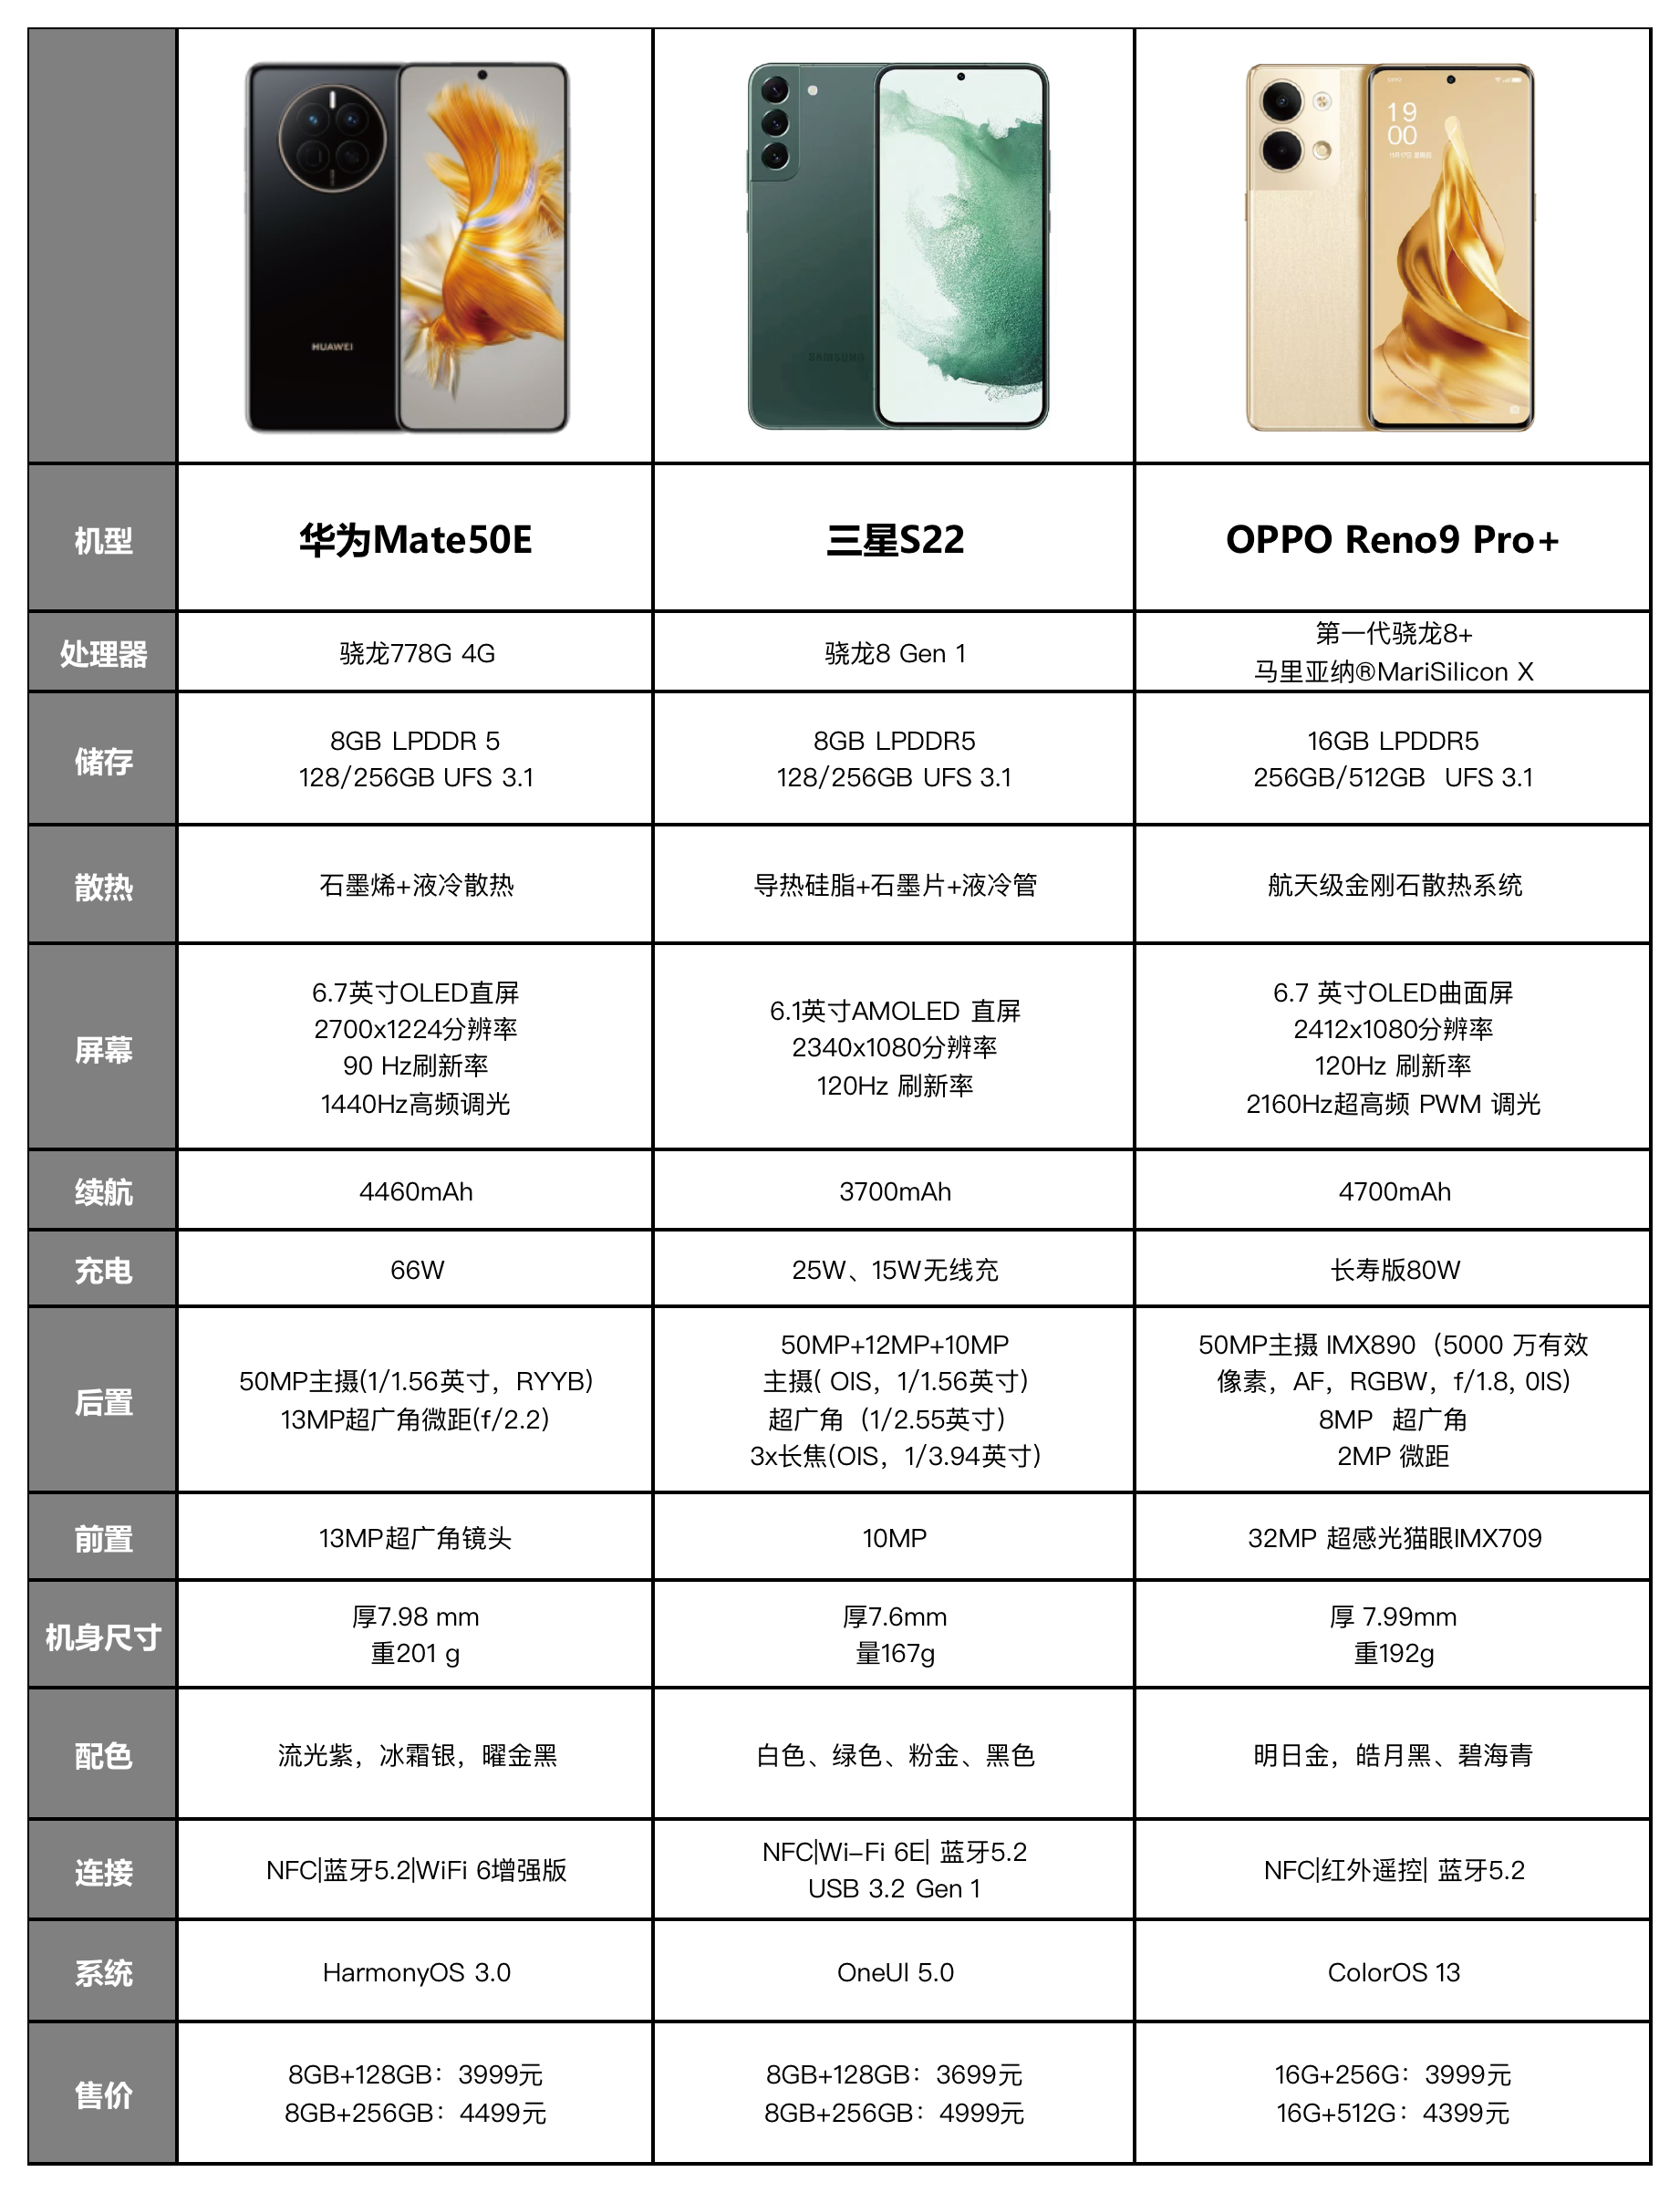 |想在4000价位里选一款手机确实挺难，这个价位里就这三款比较香吧？